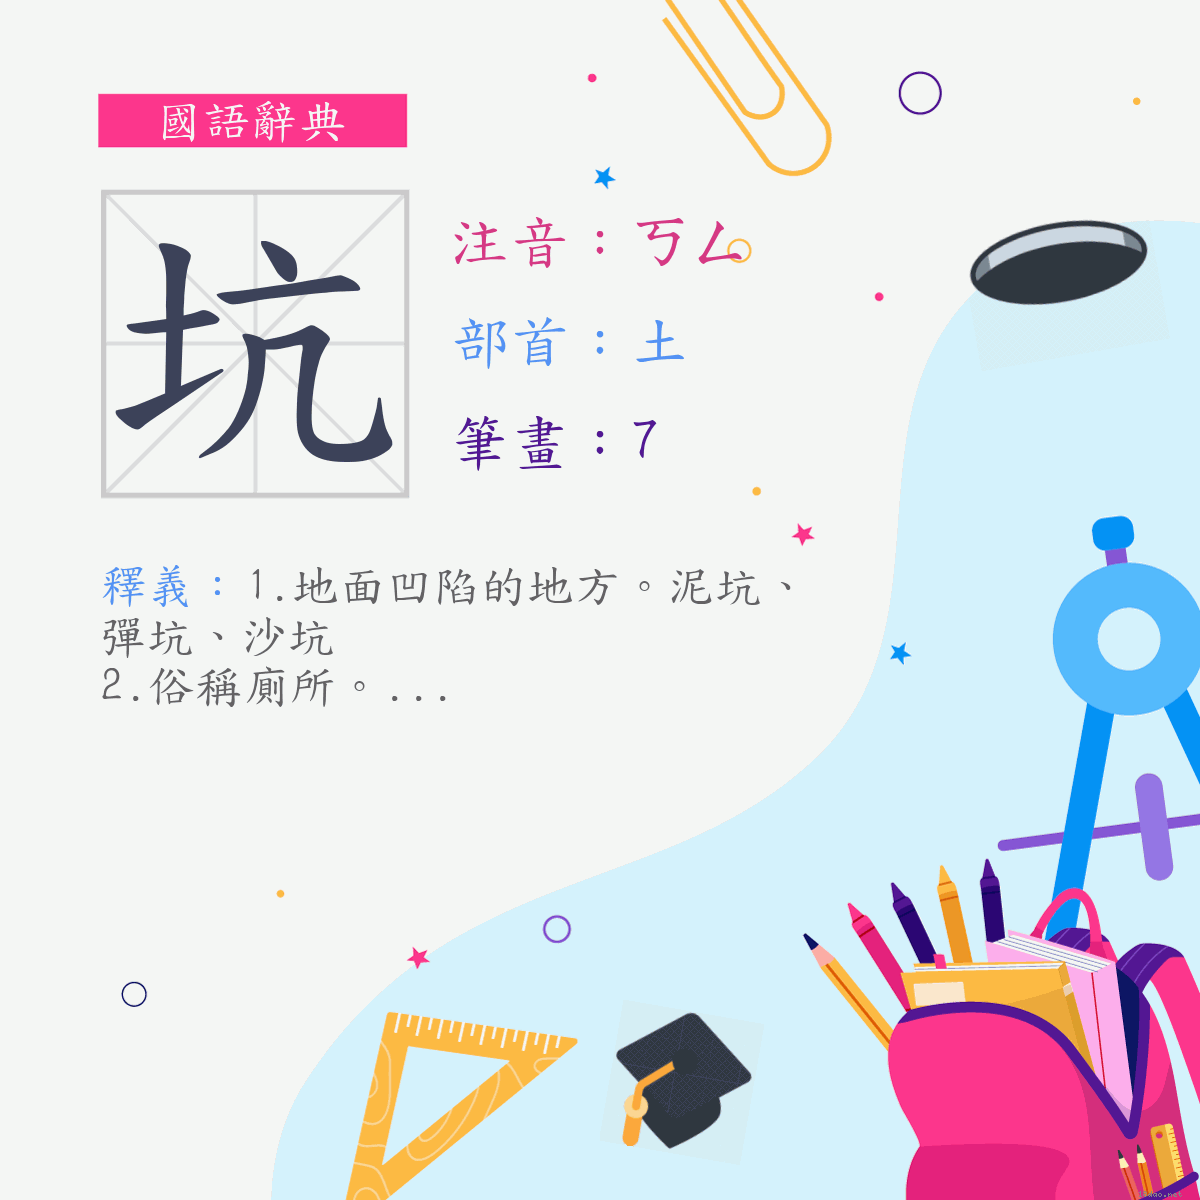 坑志_书法字体_字体设计作品-中国字体设计网_ziti.cndesign.com